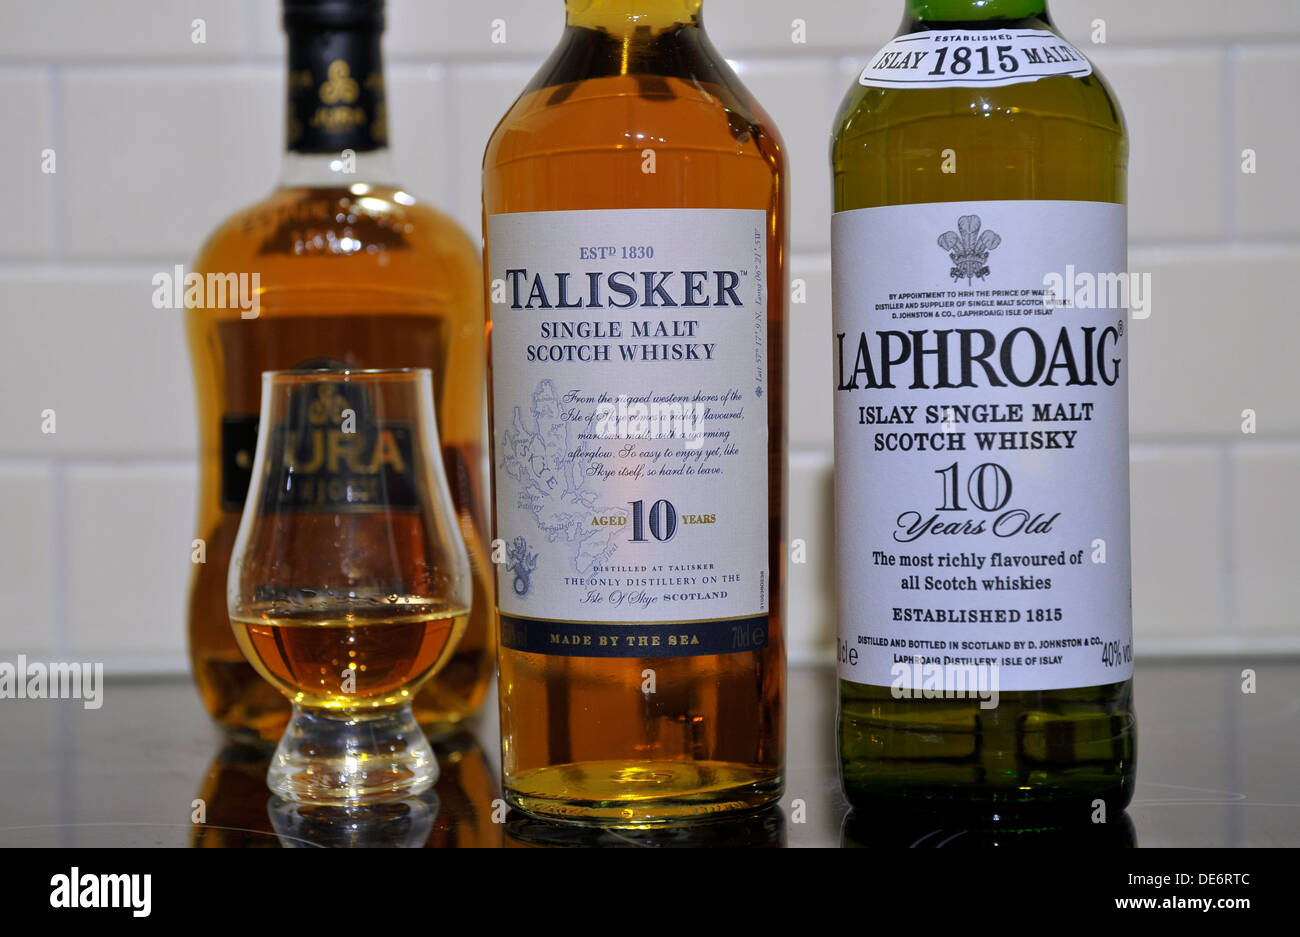 Bottles of Scottish single malt whiskies. From left, Jura, Talisker, Jura and Laphroaig. Stock Photo